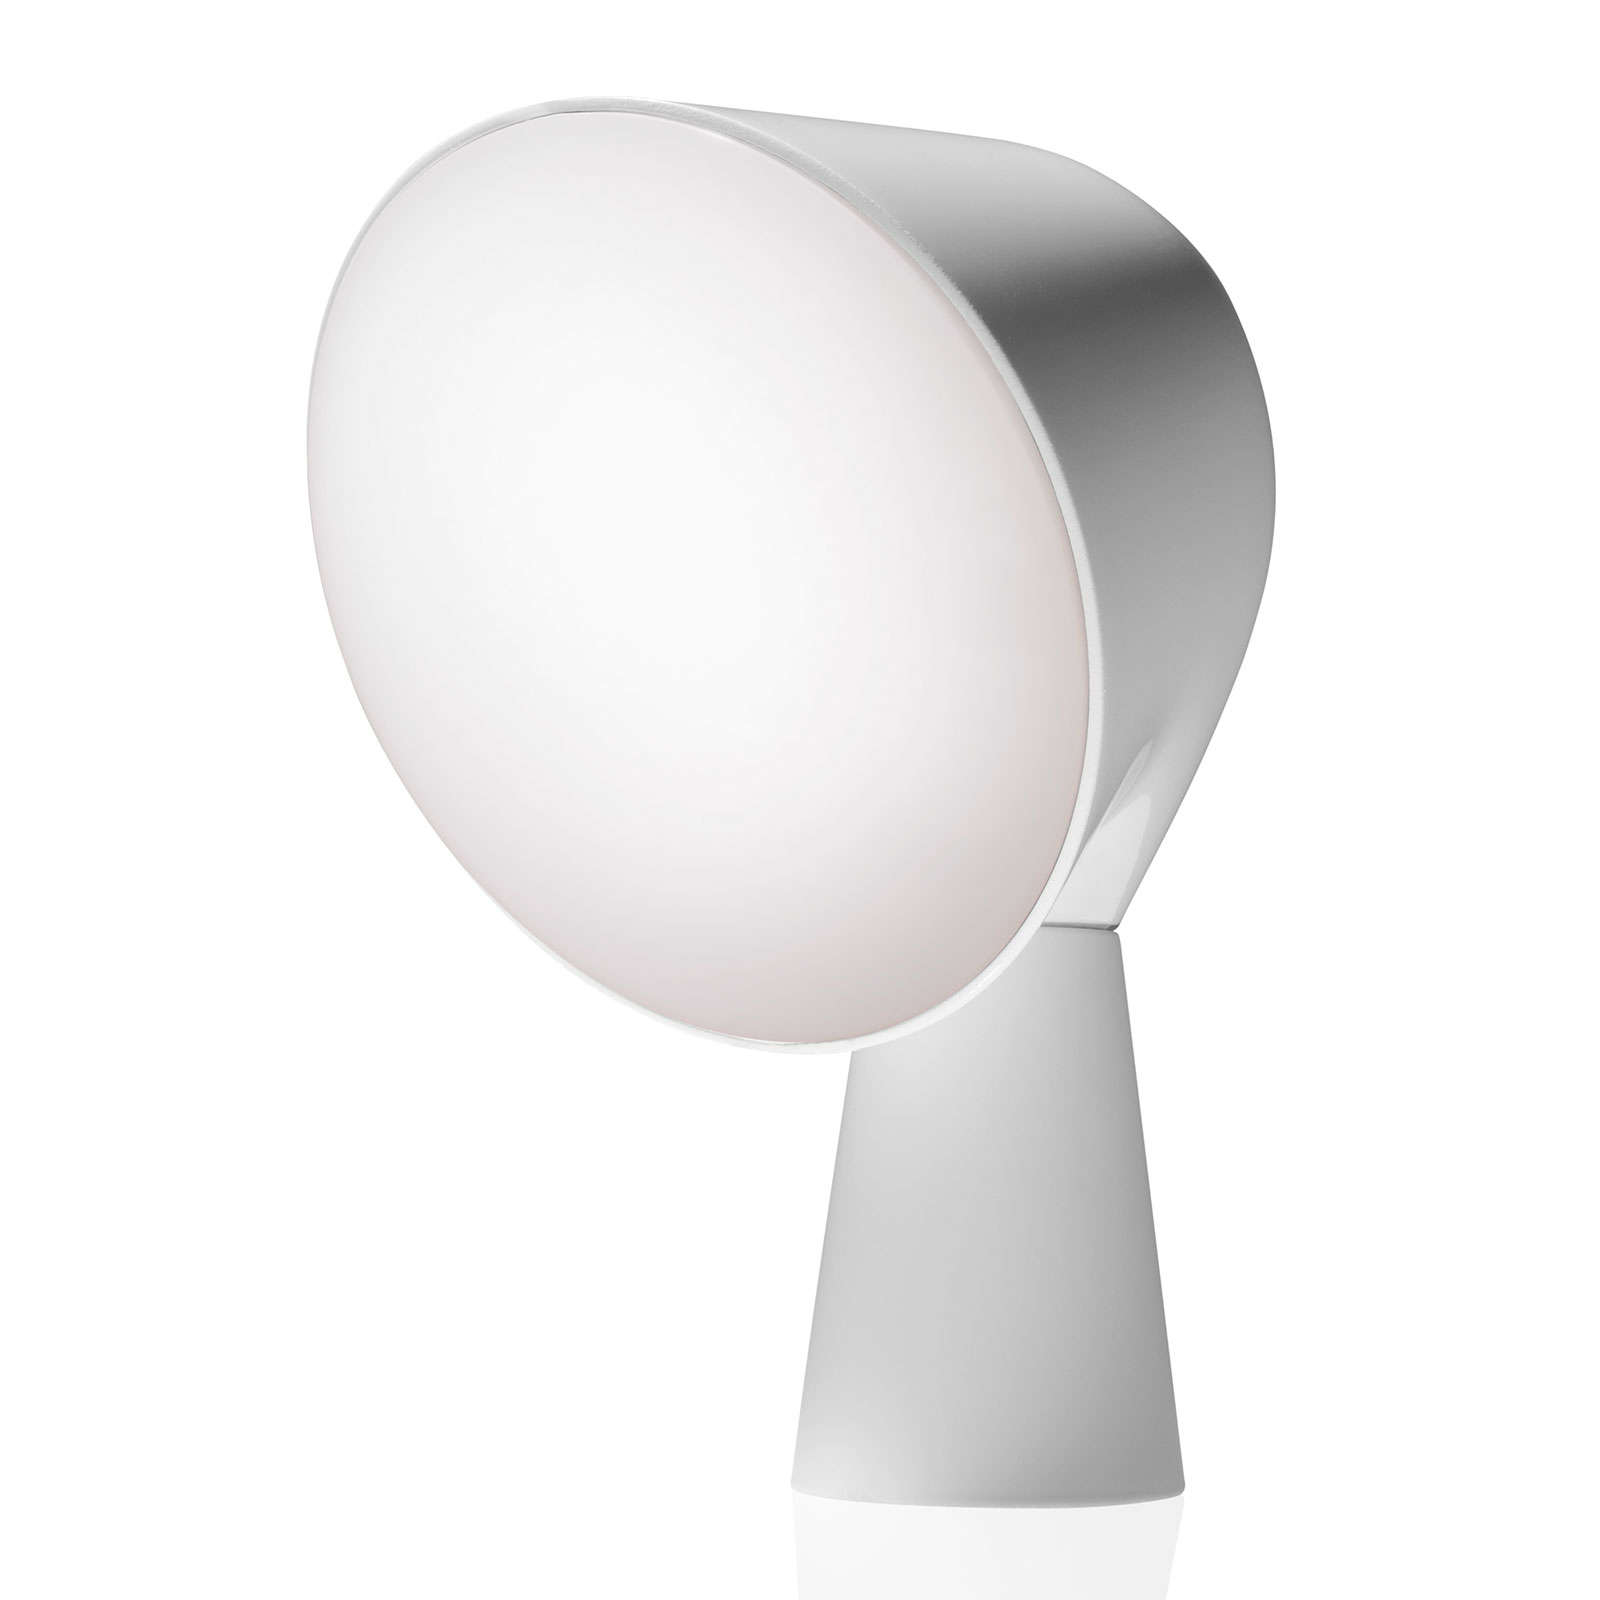 Foscarini Binic lampe à poser de designer, blanche